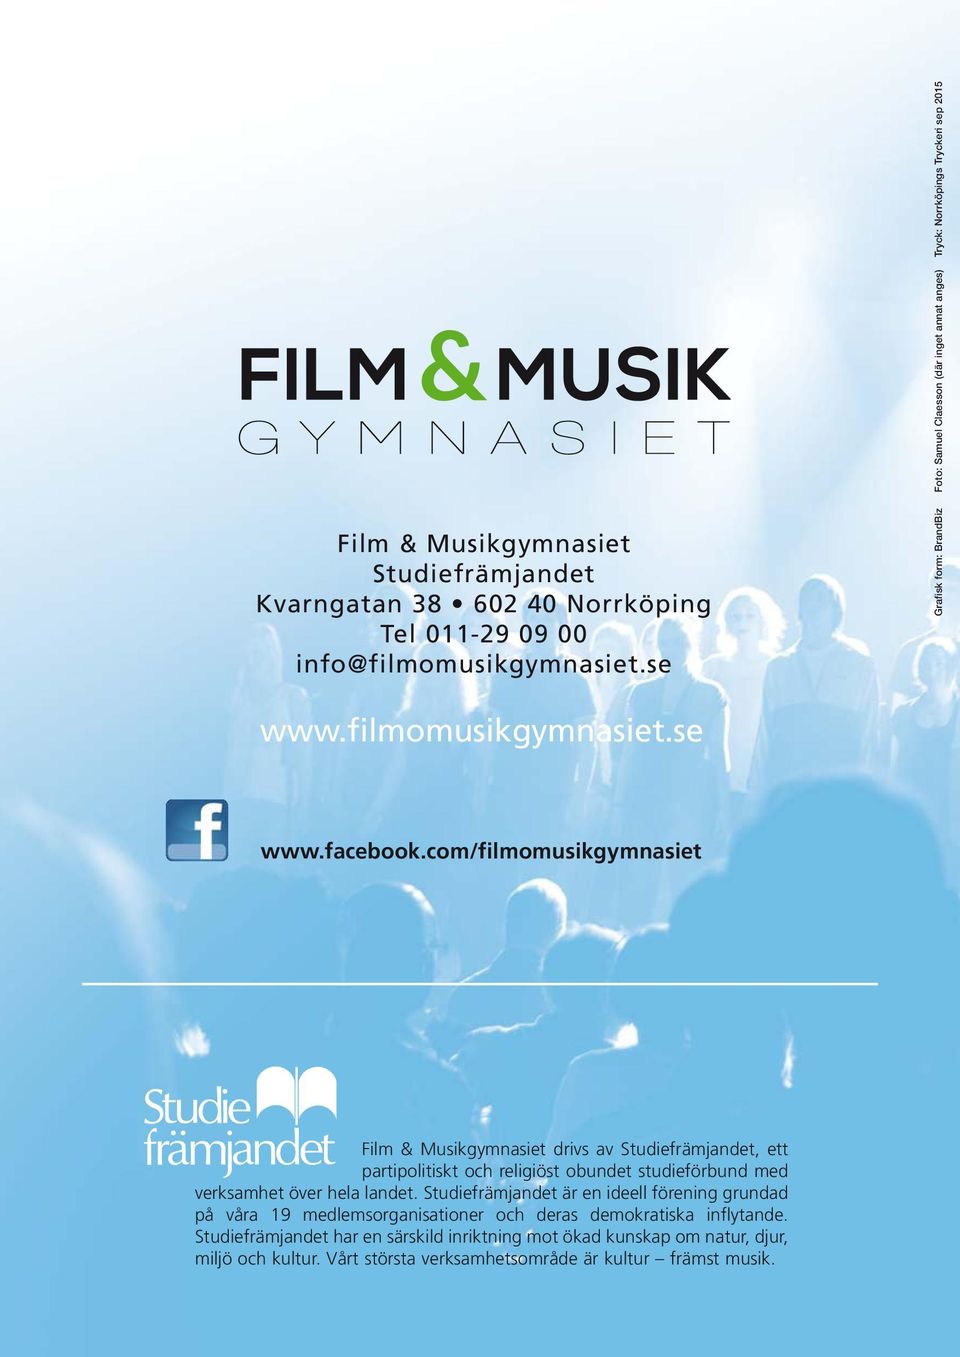 com/filmomusikgymnasiet Film & Musikgymnasiet drivs av Studiefrämjandet, ett partipolitiskt och religiöst obundet studieförbund med verksamhet över hela landet.